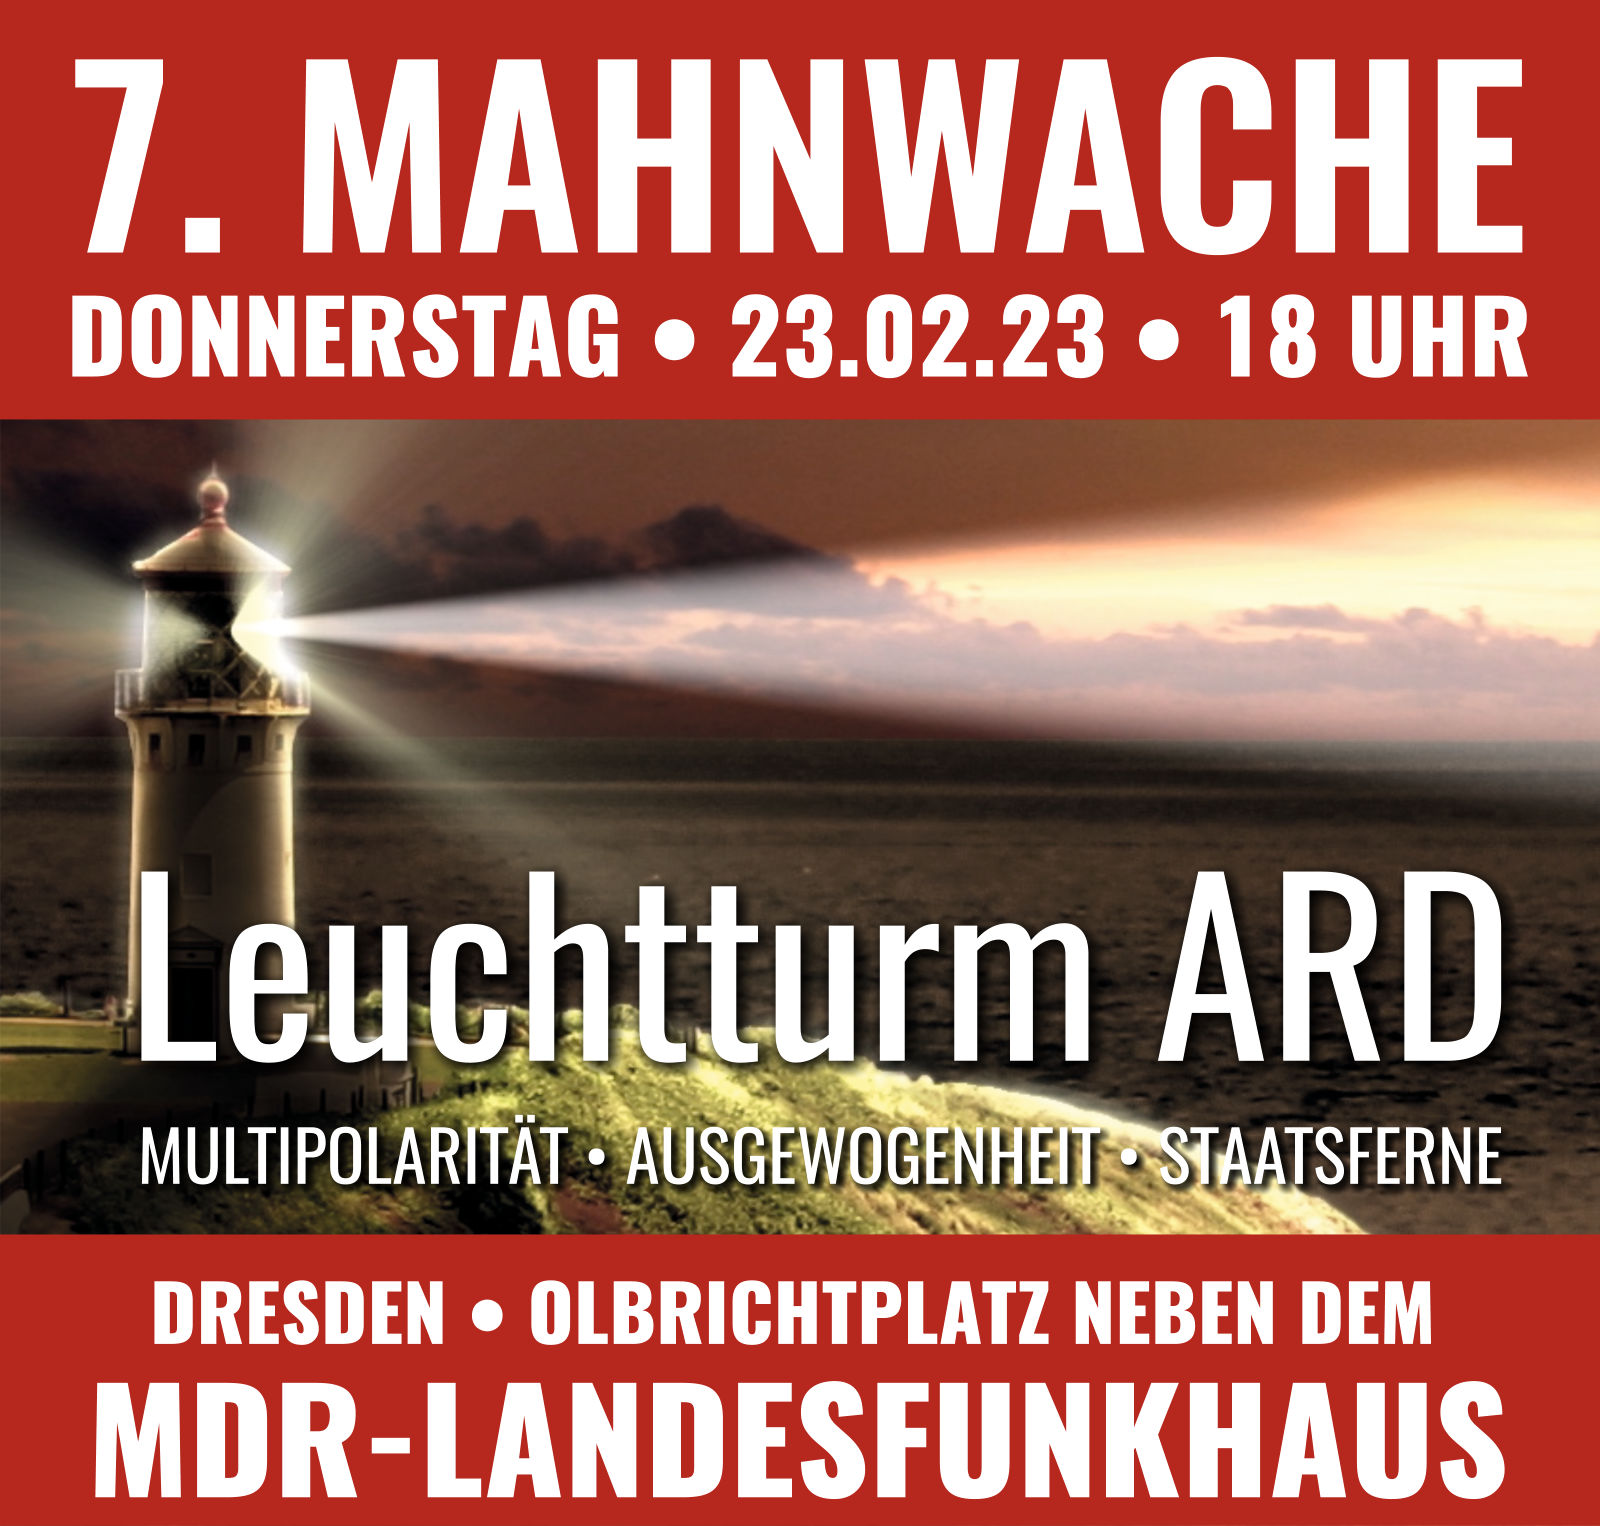 7. Mahnwache Leuchtturm ARD am 23.02.2023 in Dresden neben dem MDR